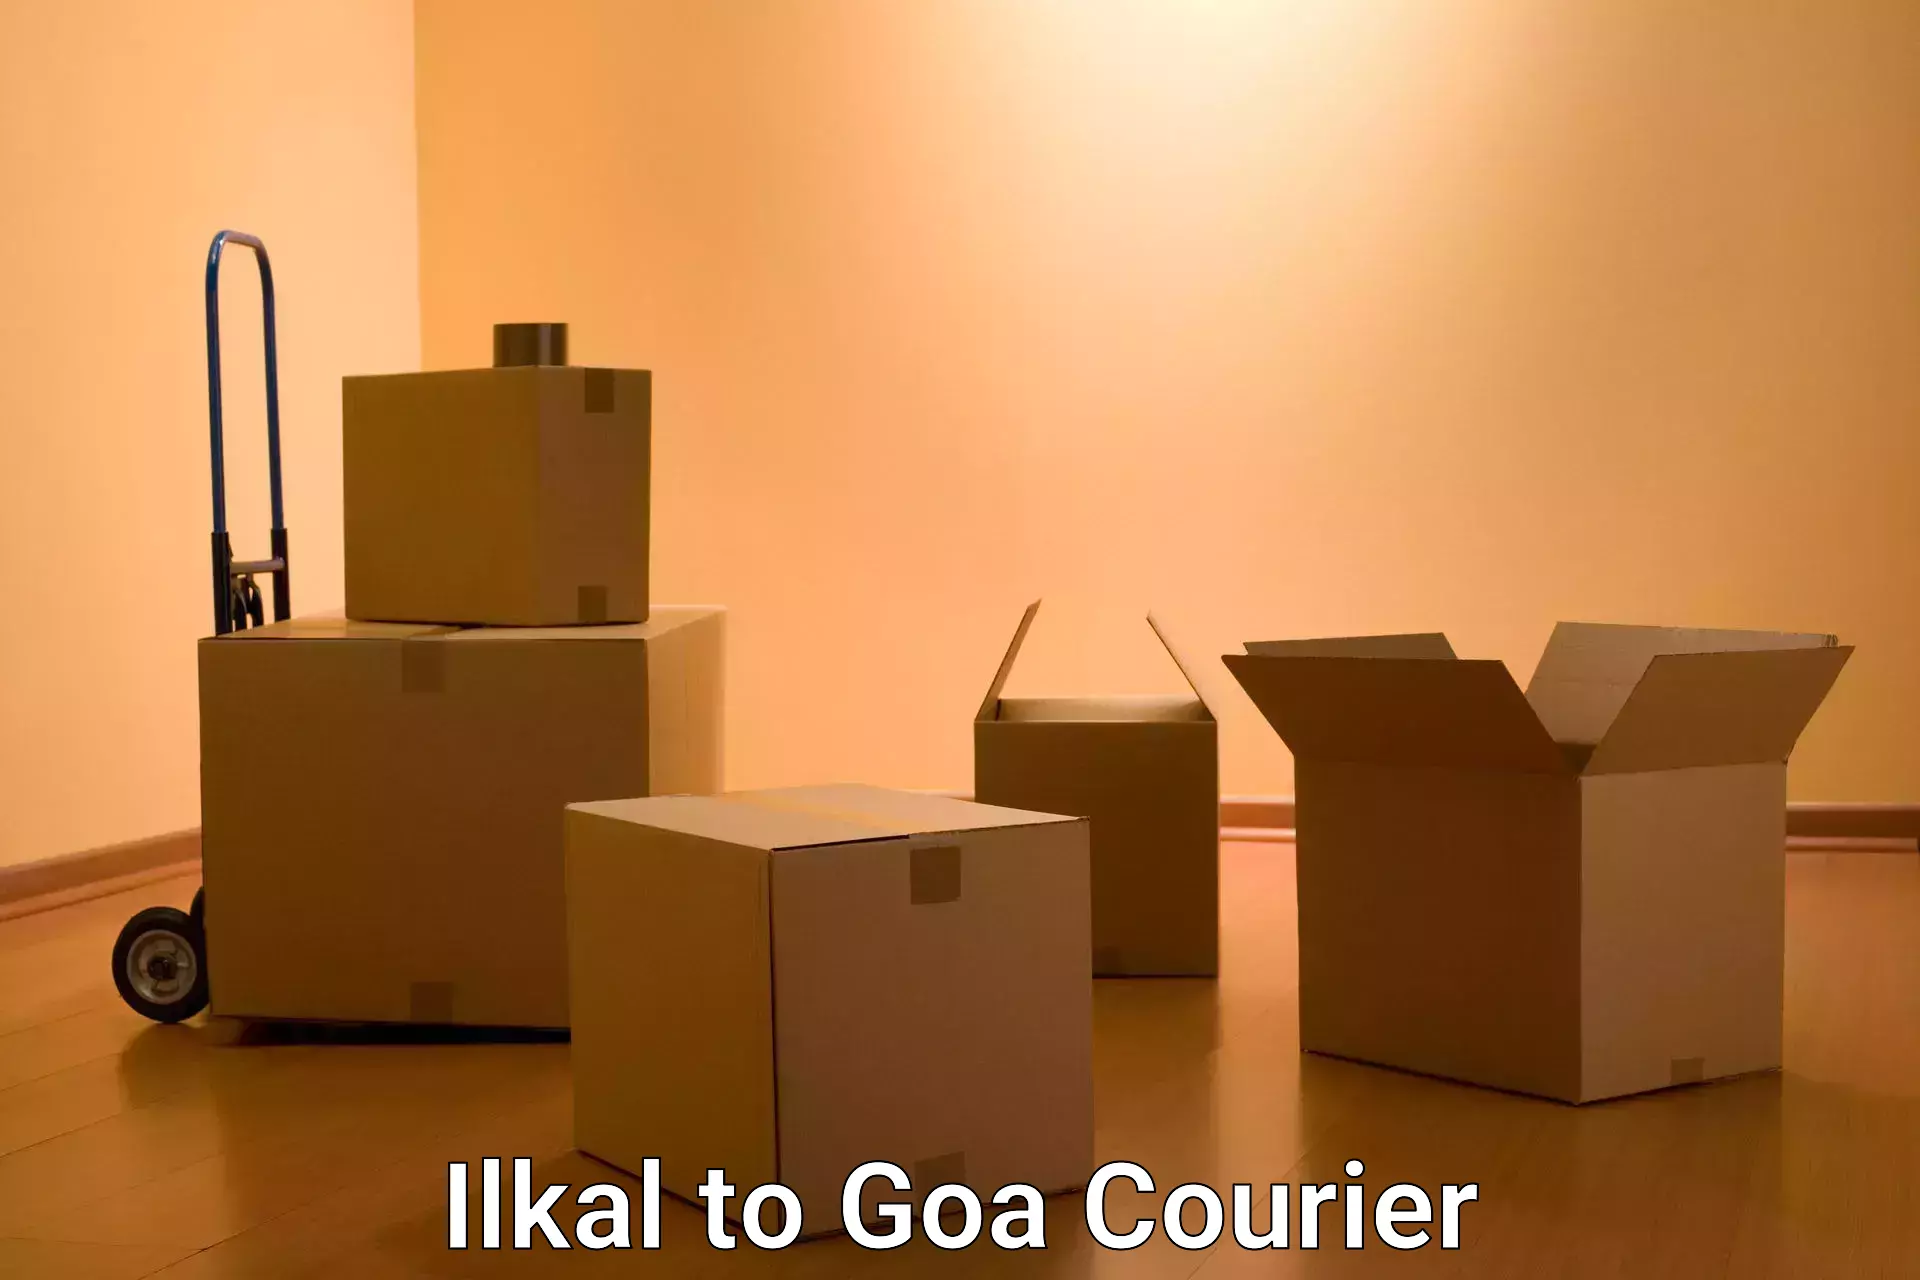 Global logistics network Ilkal to Goa